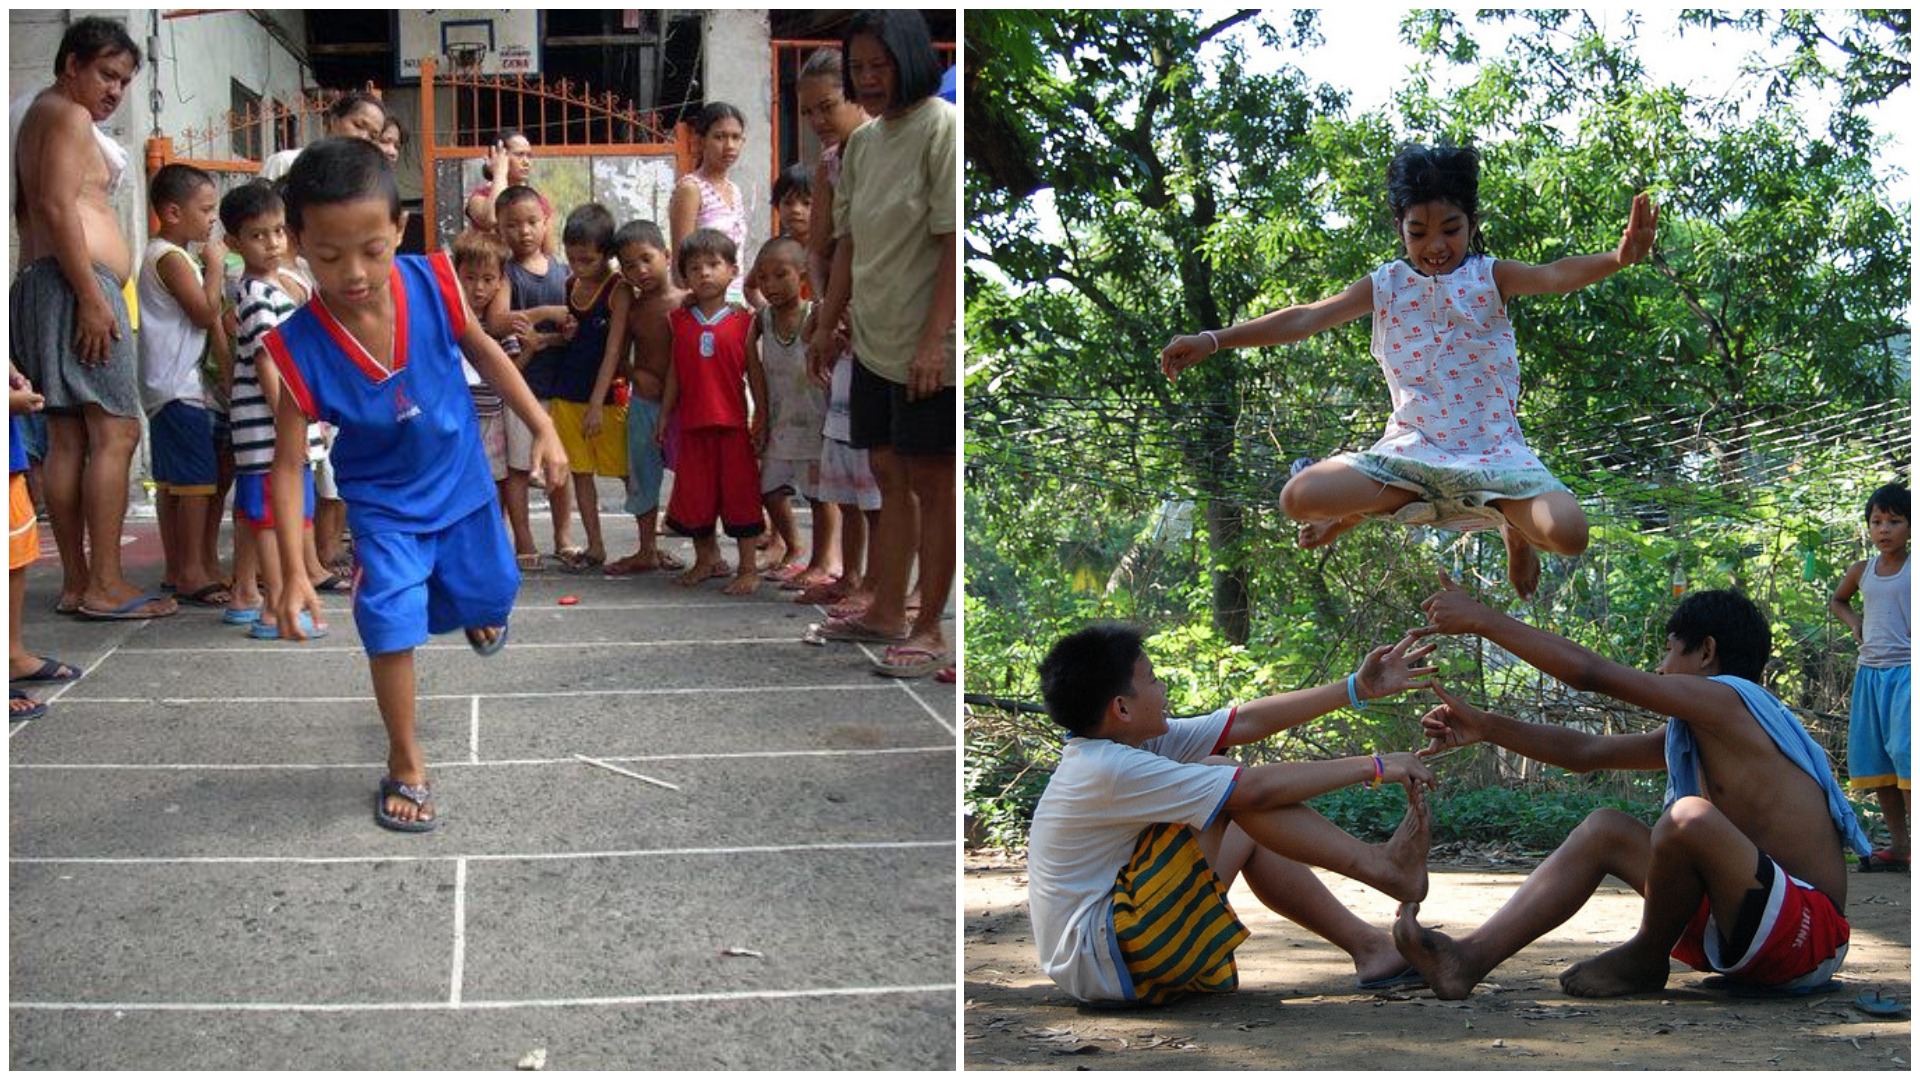 filipino kids playing